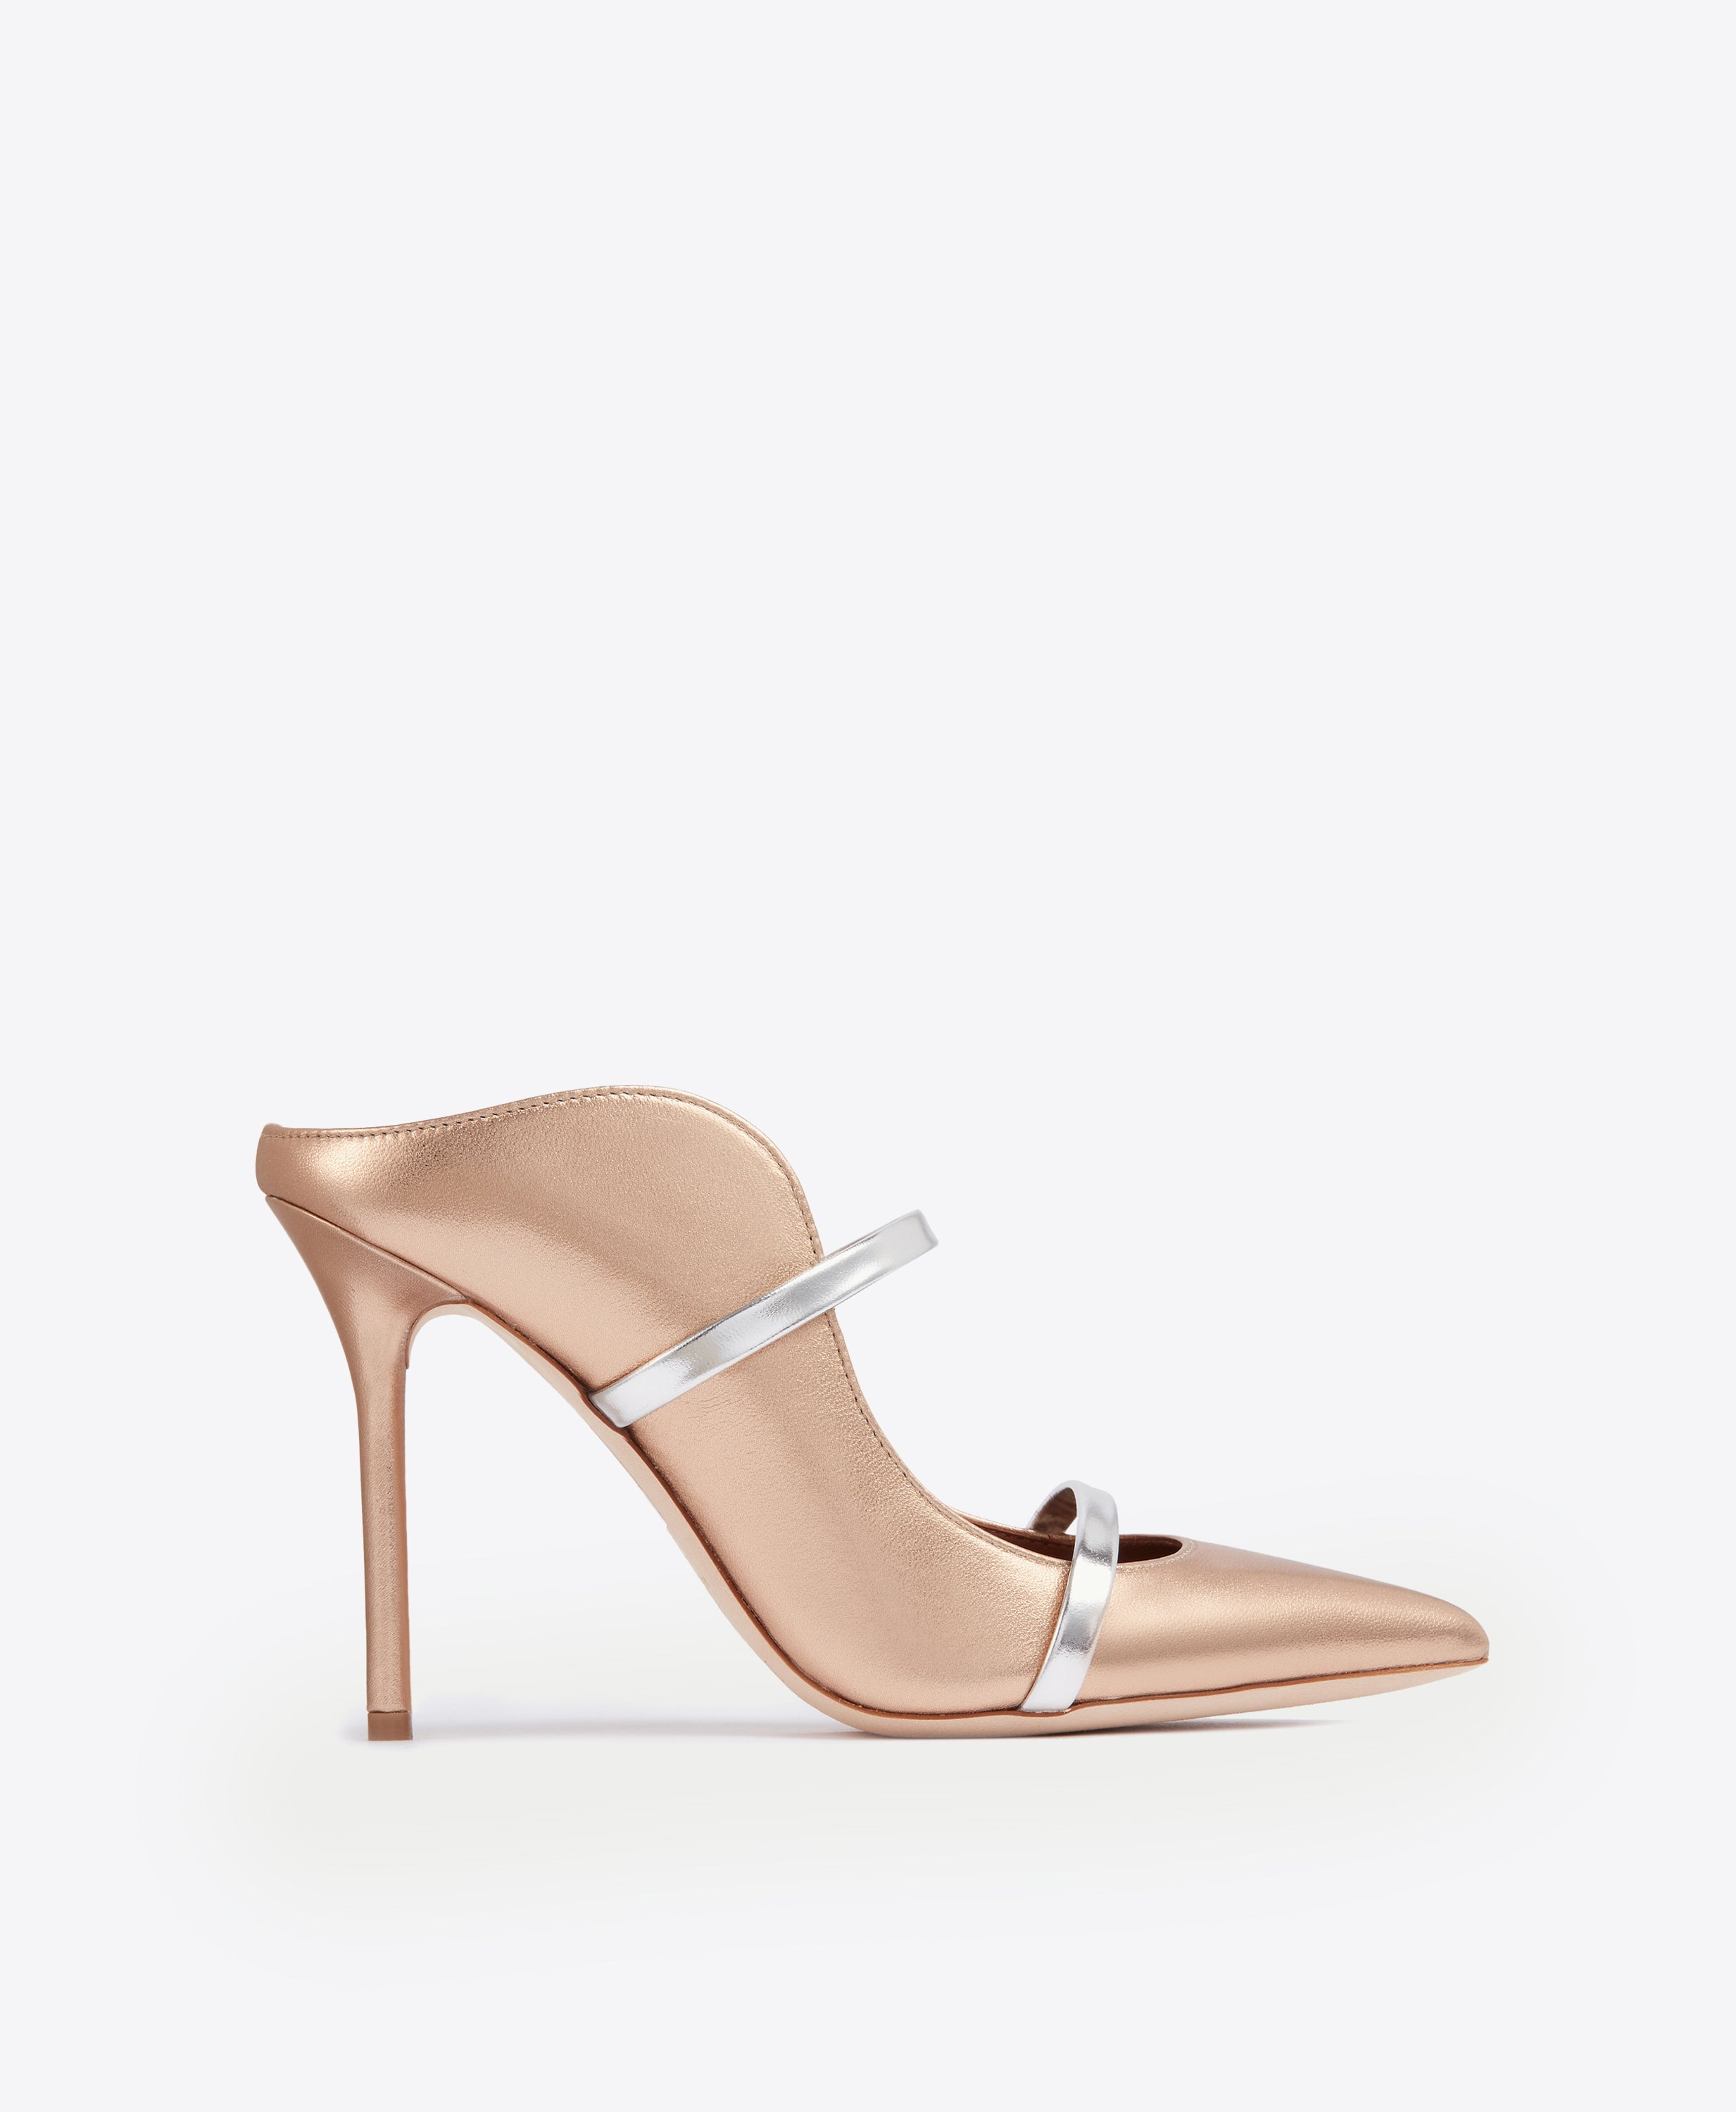 Mazy Silver Women's High heels | ALDO US